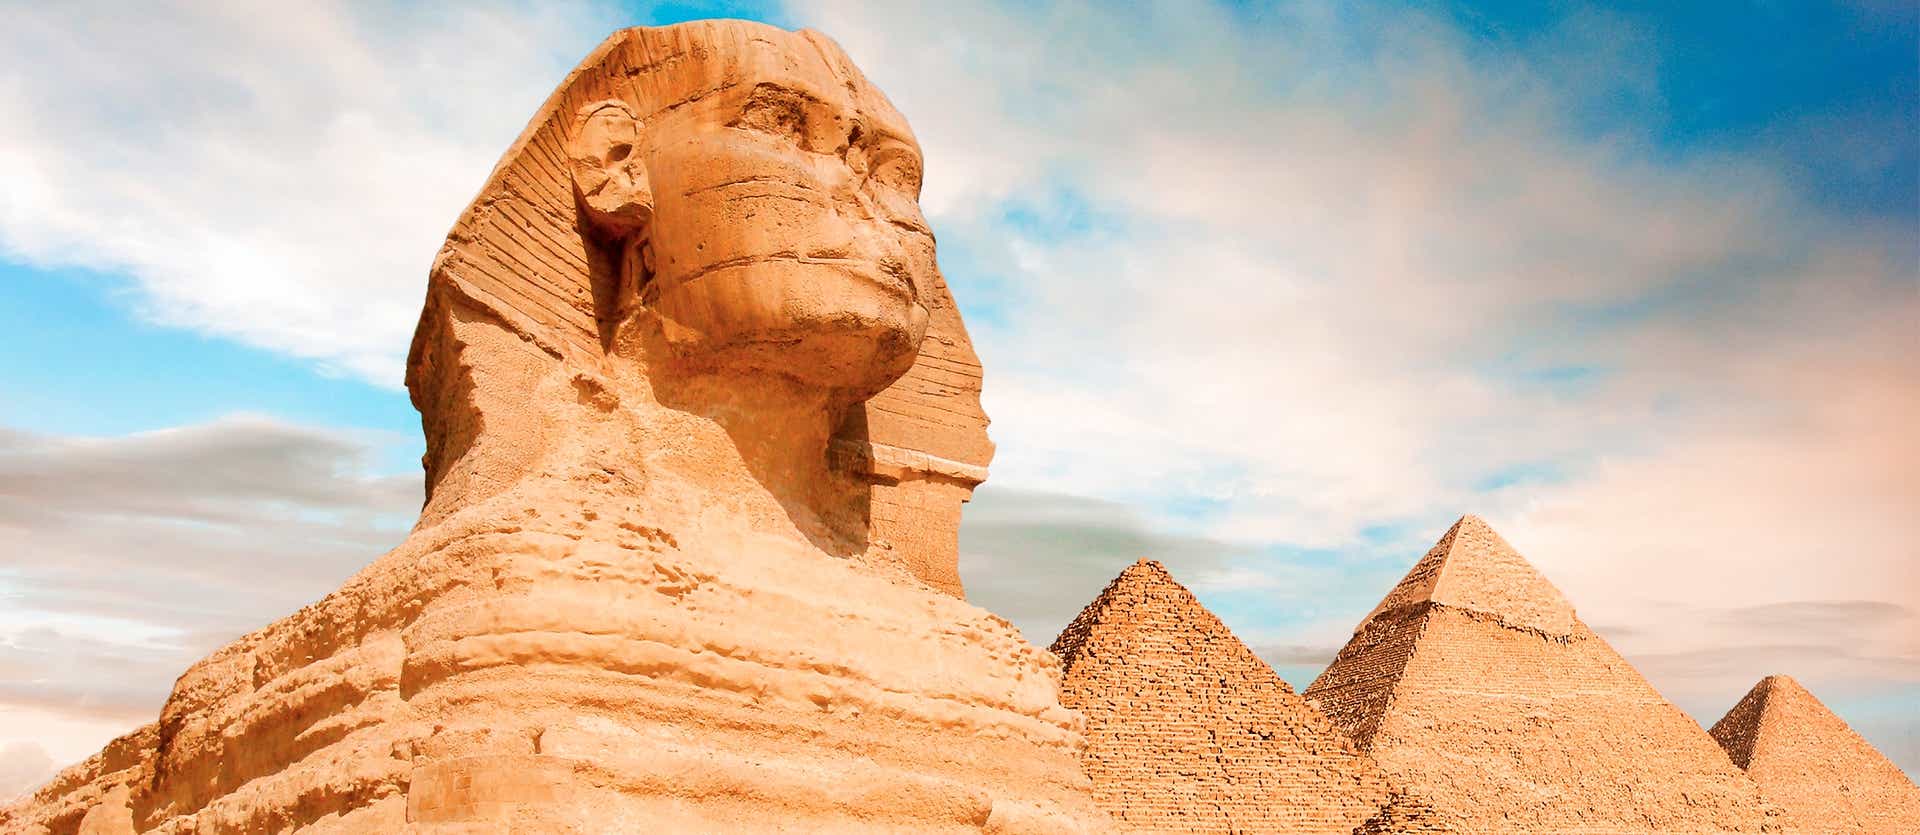 Great Sphinx <span class="iconos separador"></span> Giza <span class="iconos separador"></span> Egypt